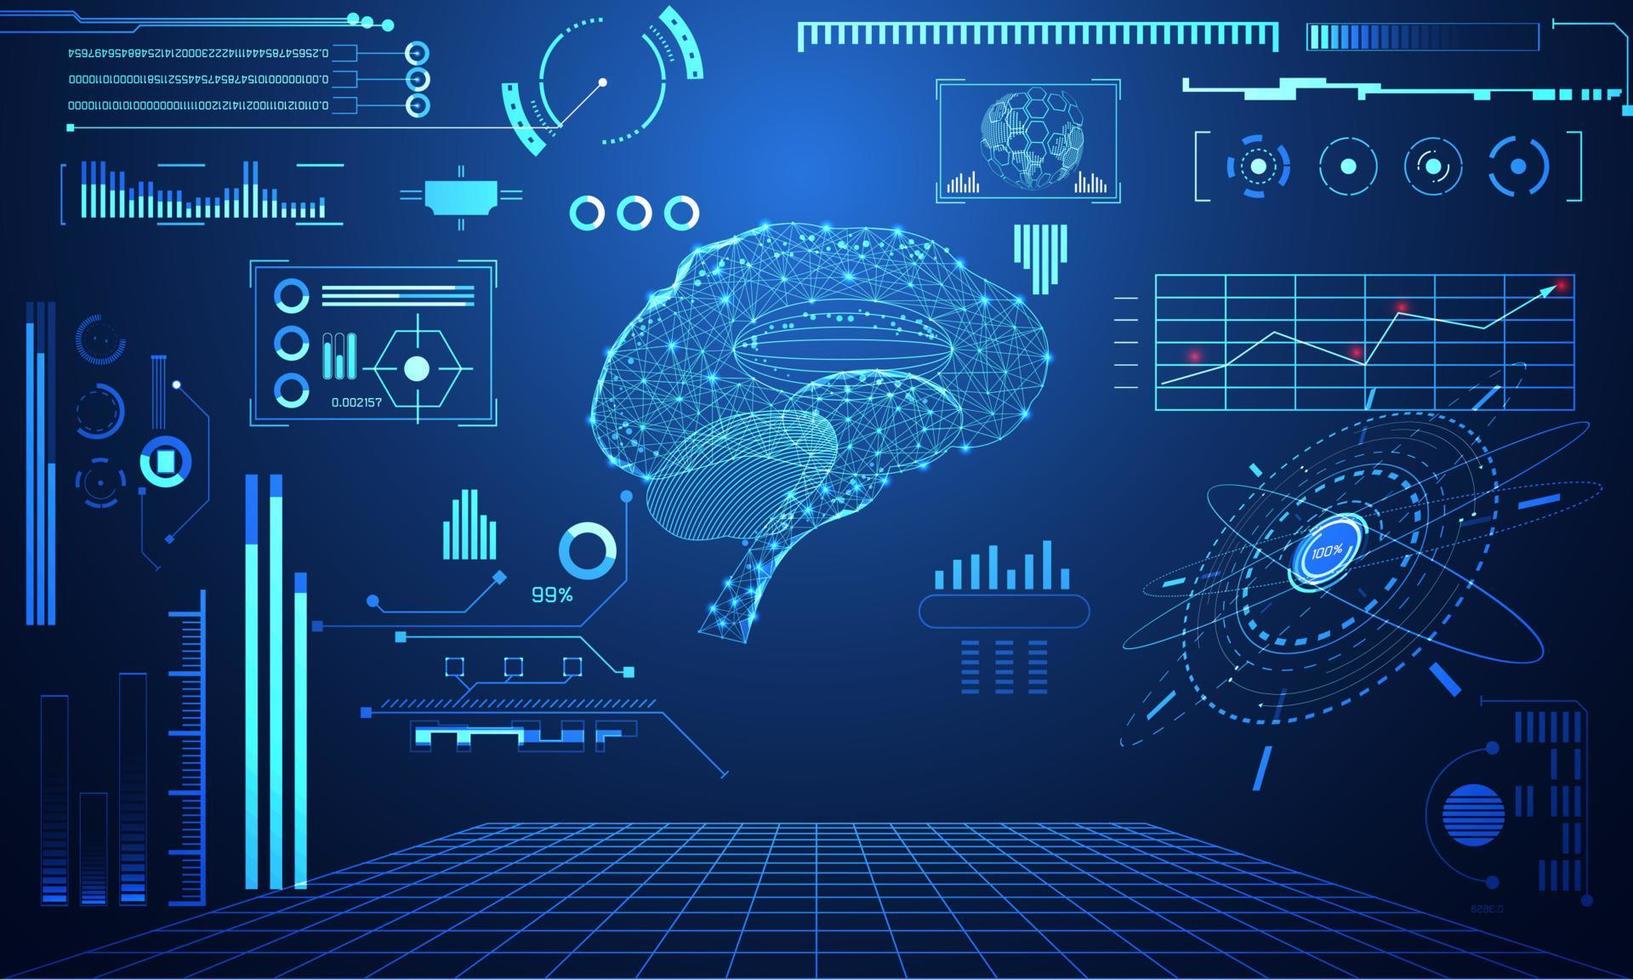 abstrakt teknologi vetenskap koncept hjärndata hälsa digital hud gränssnitt element av medicin analys läkare, läkare, läkare och procent vitalitet innovation på hi tech framtida design bakgrund vektor